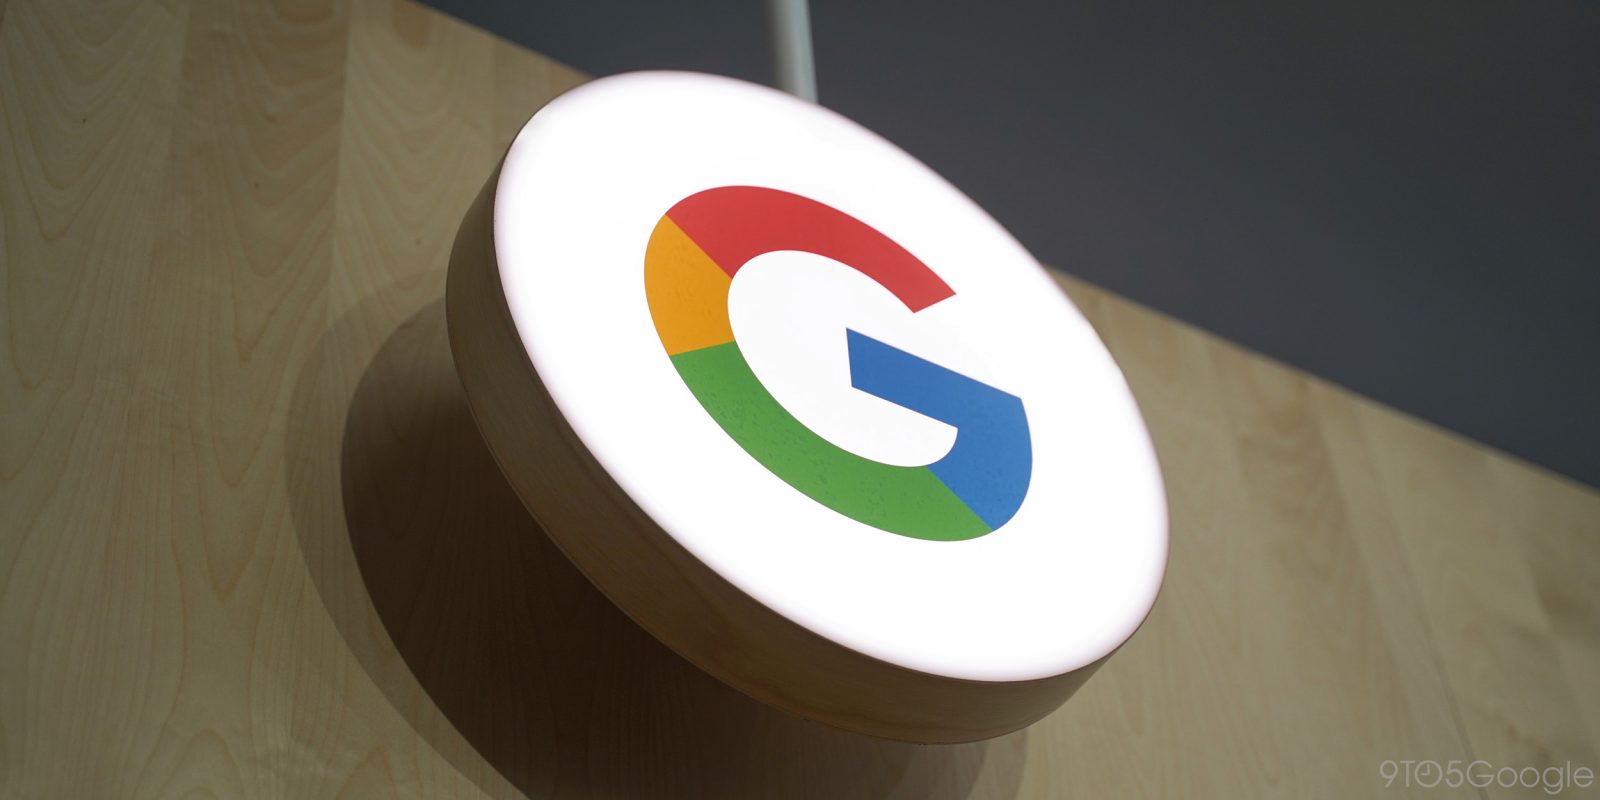 ΗΠΑ: Η κυβέρνηση και οκτώ Πολιτείες προσέφυγαν κατά της Google κατηγορώντας την για μονοπωλιακές πρακτικές στην αγορά της διαφήμισης